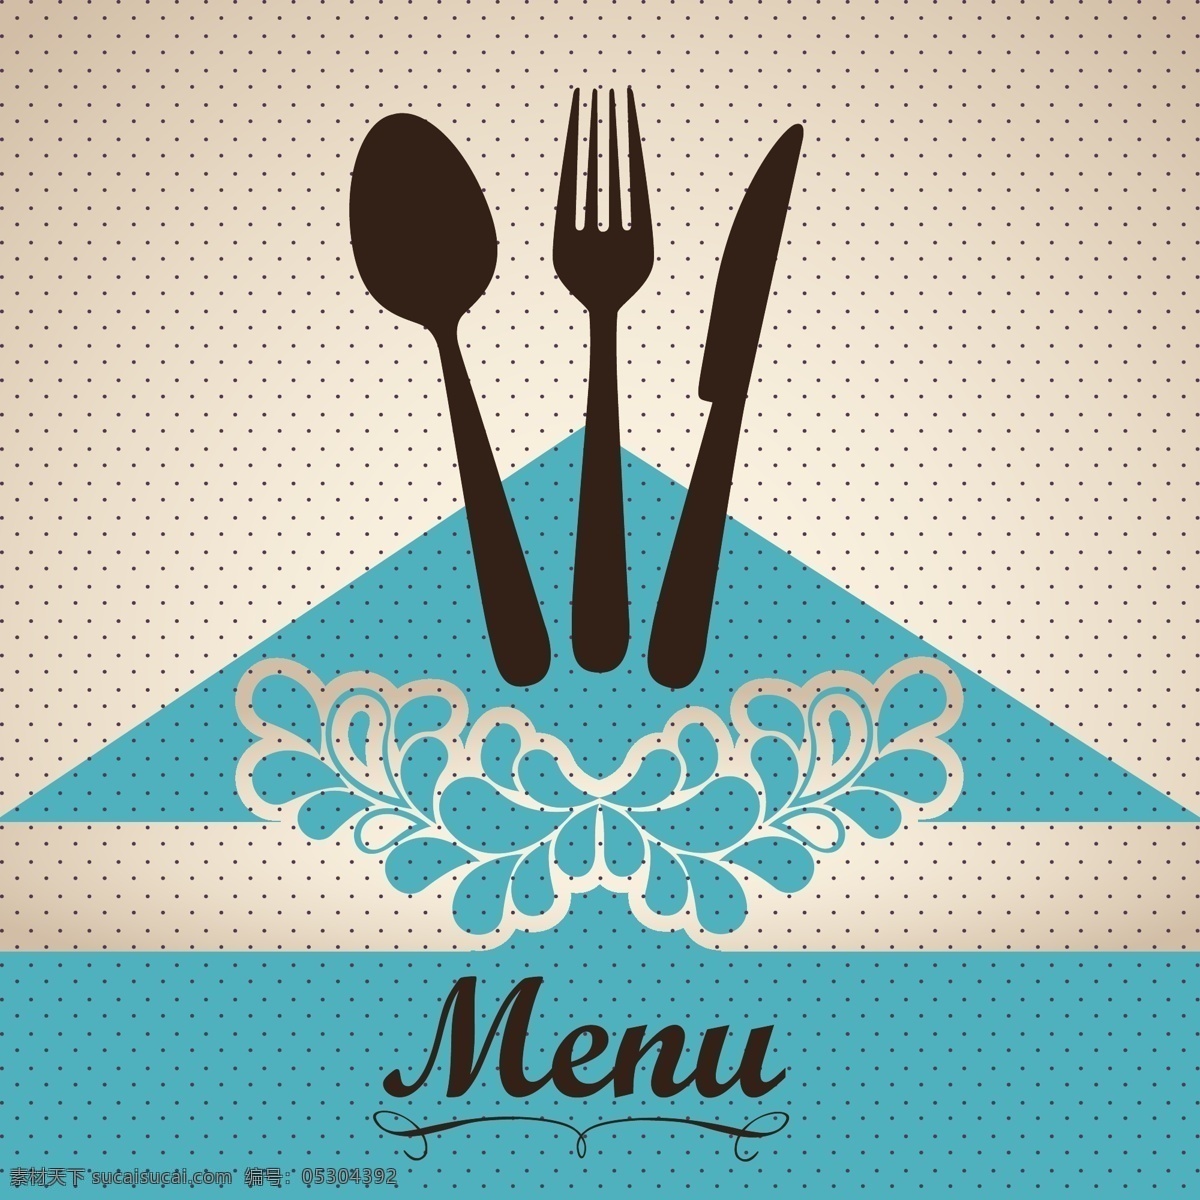 矢量 简约 菜单 封面 设计素材 餐厅 底纹 矢量素材 矢量图